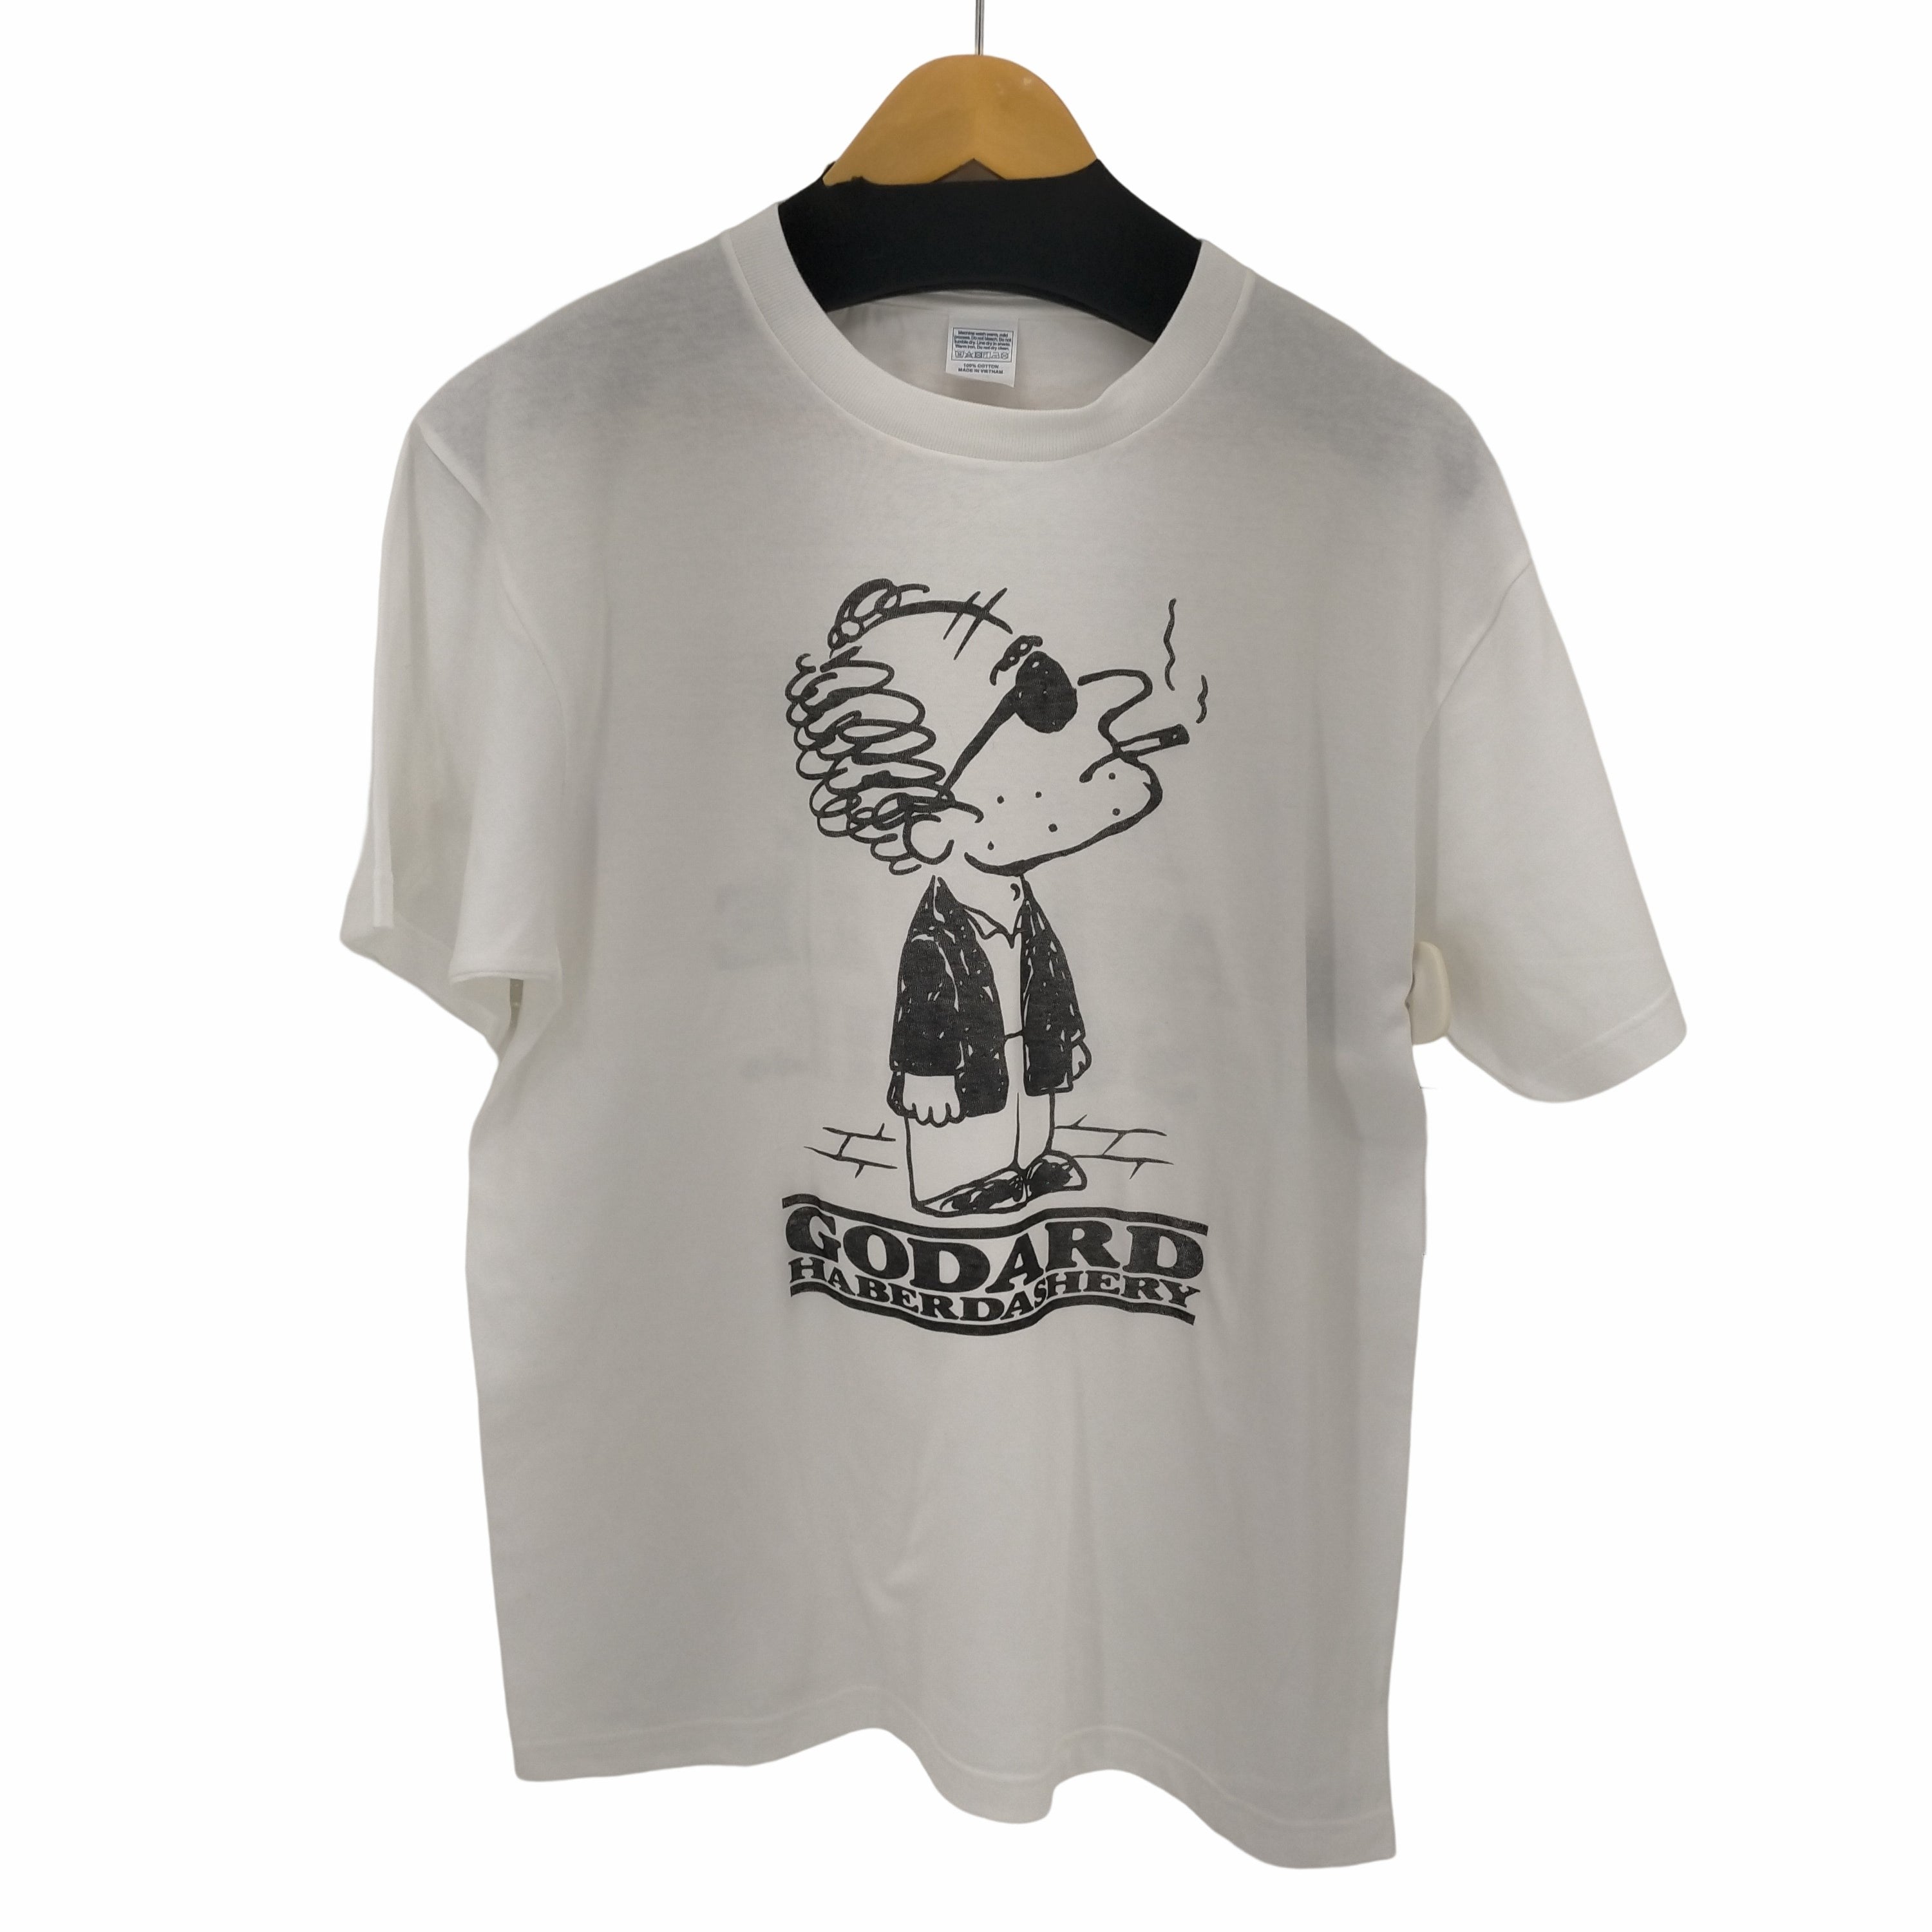 Godard Haberdashery シネマtシャツ | 9livesbrewing.co.uk